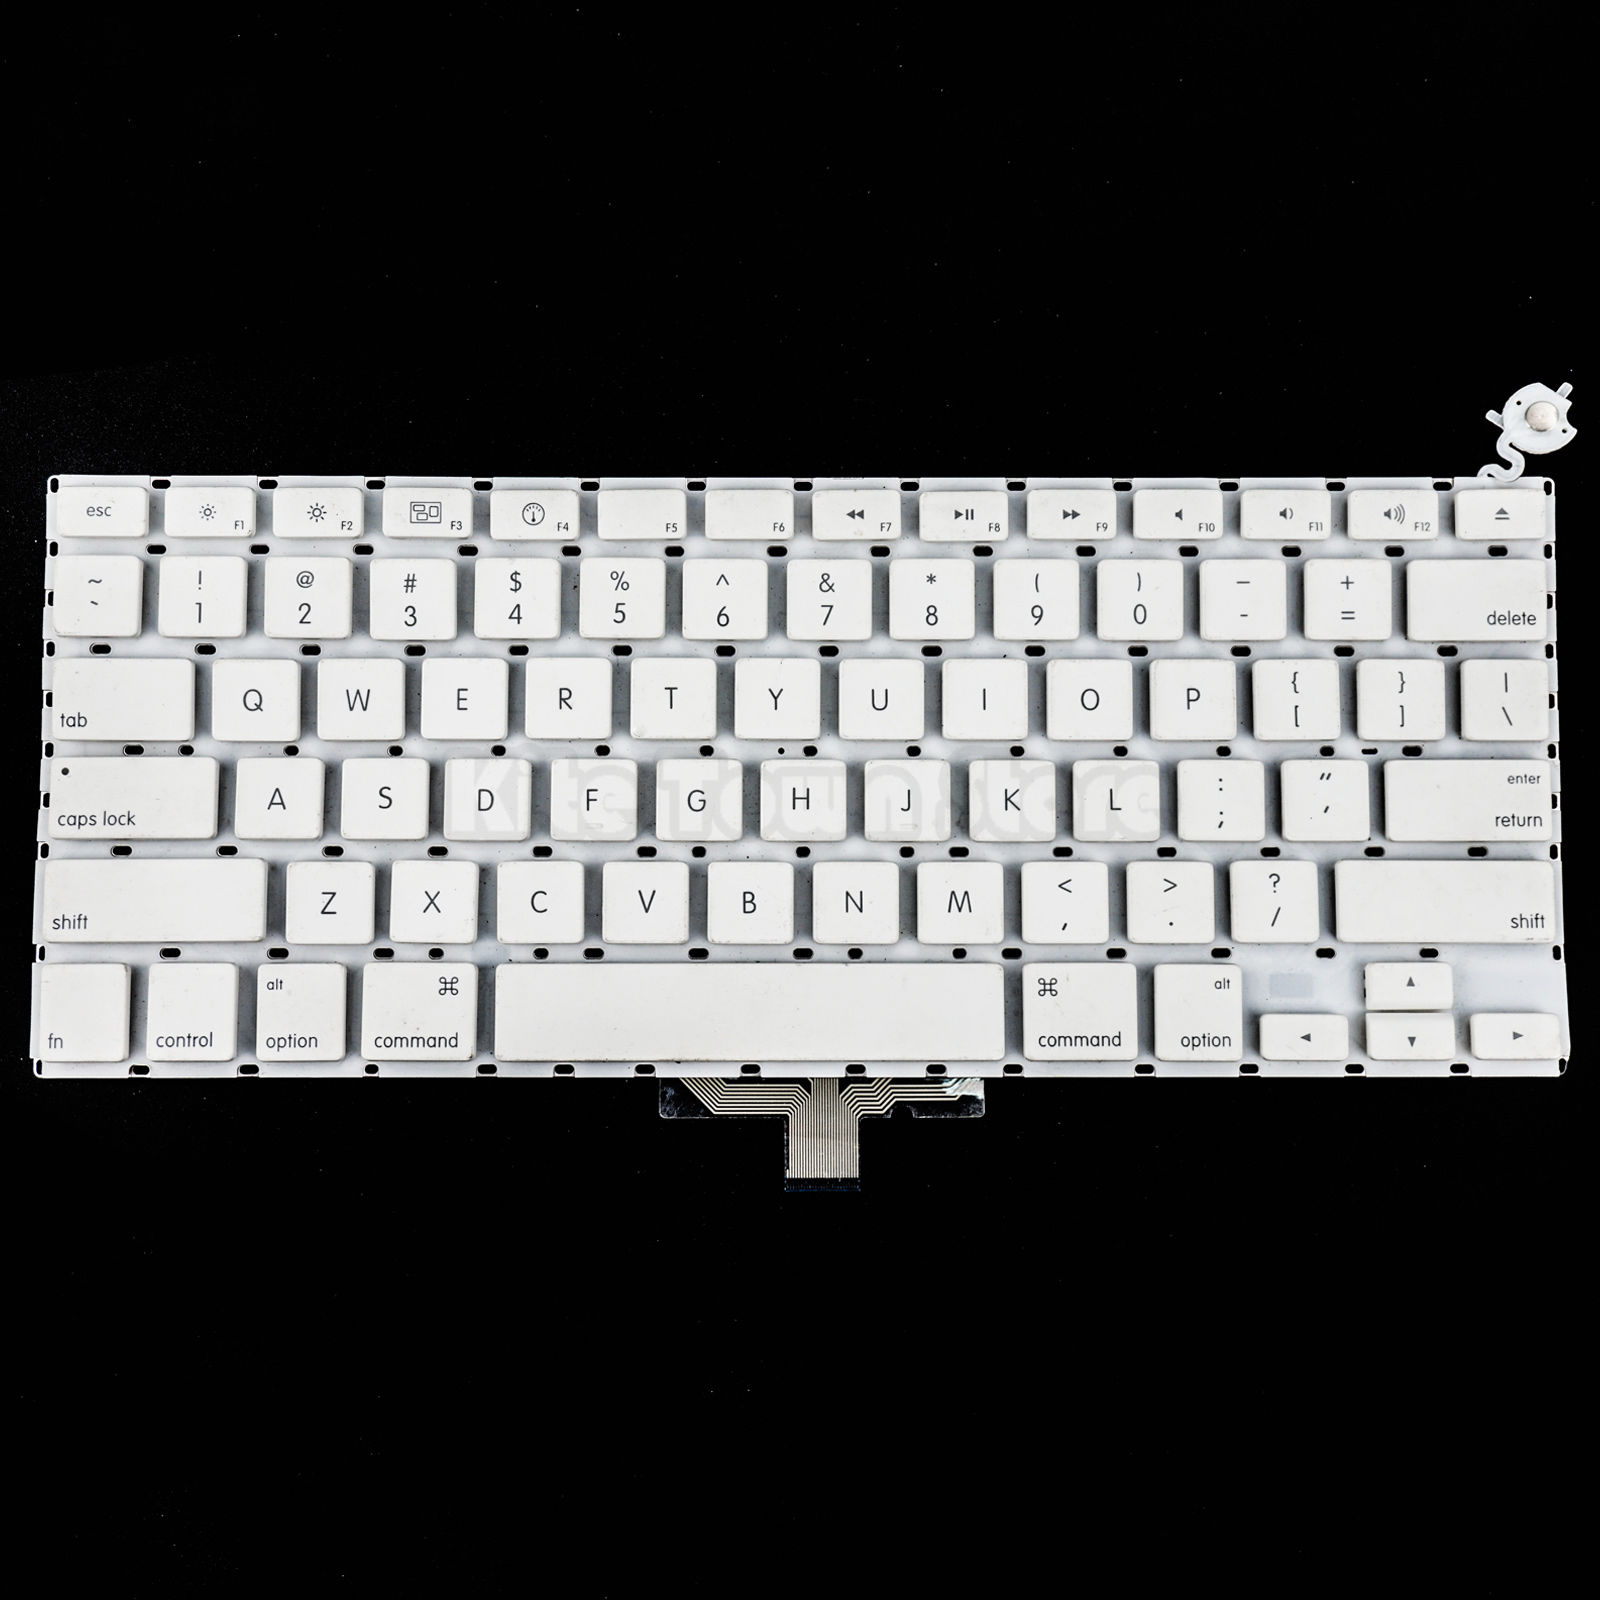 Bàn Phím - Keyboard Laptop Macbook Apple 13.3 " A1185